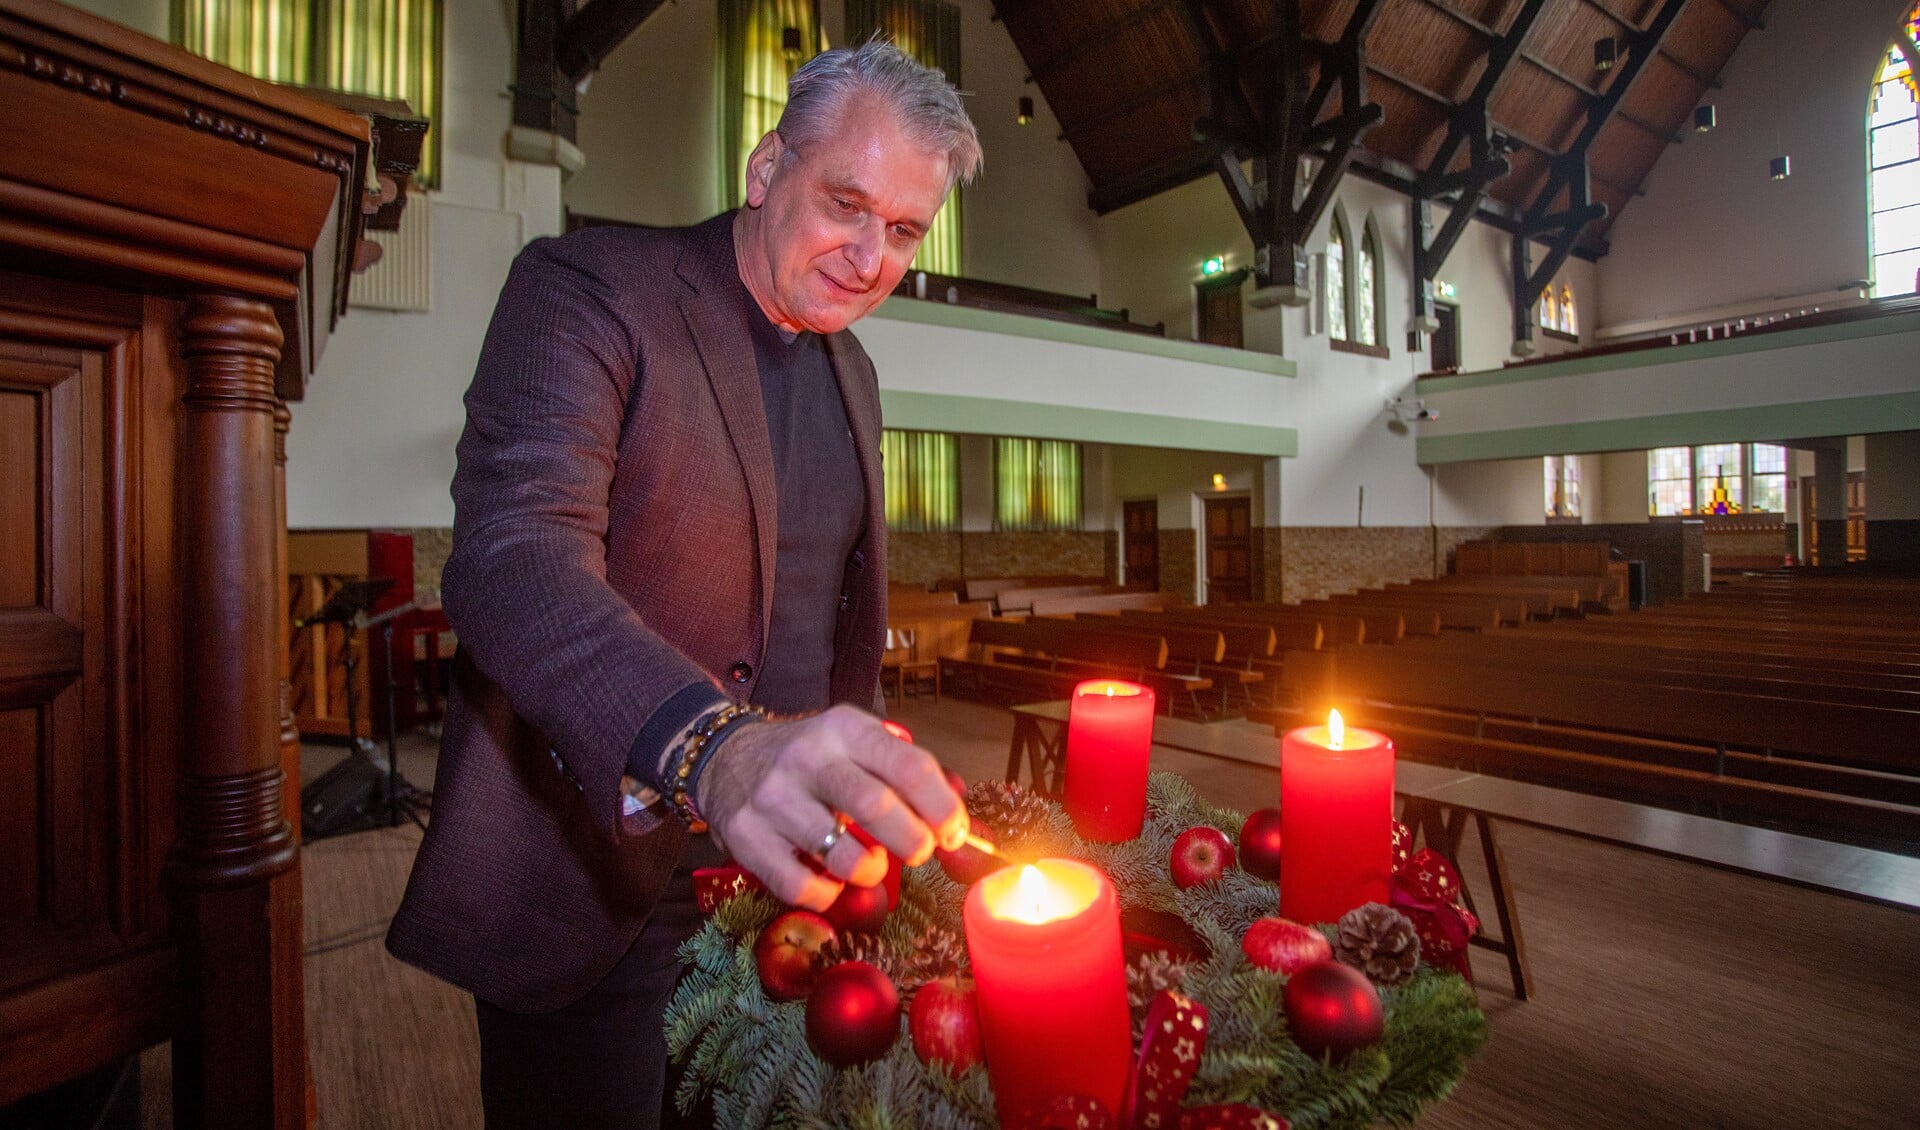 Dominee Bas van der Graaf in de Nieuwe kerk, waar diverse kerstactiviteiten plaats zullen vinden.